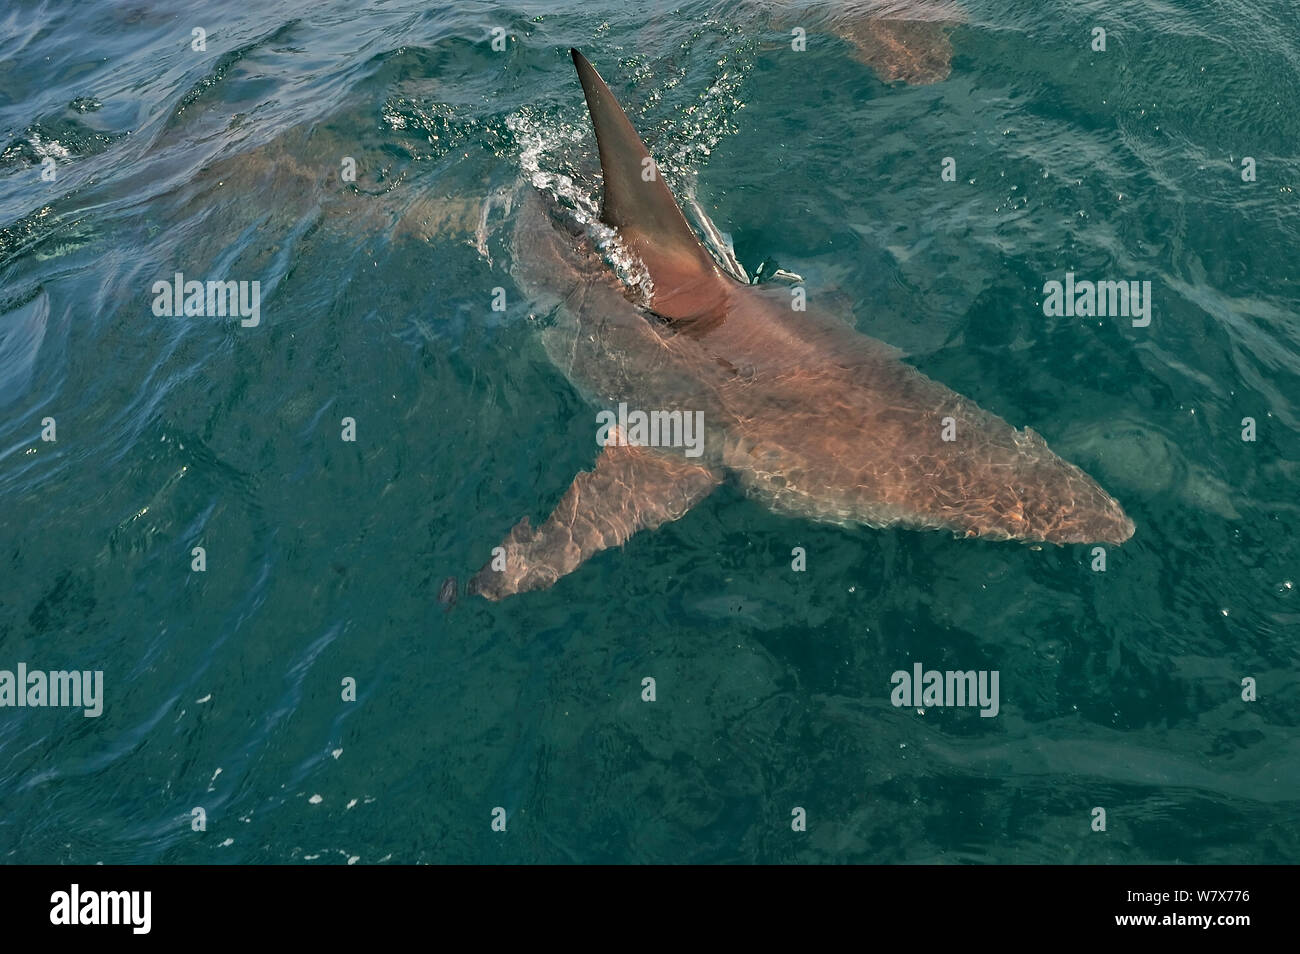 Blacktip shark (Carcharhinus limbatus) à la surface, attirés par les appâts. Kwazulu-Natal, Afrique du Sud. De l'Océan indien. Banque D'Images